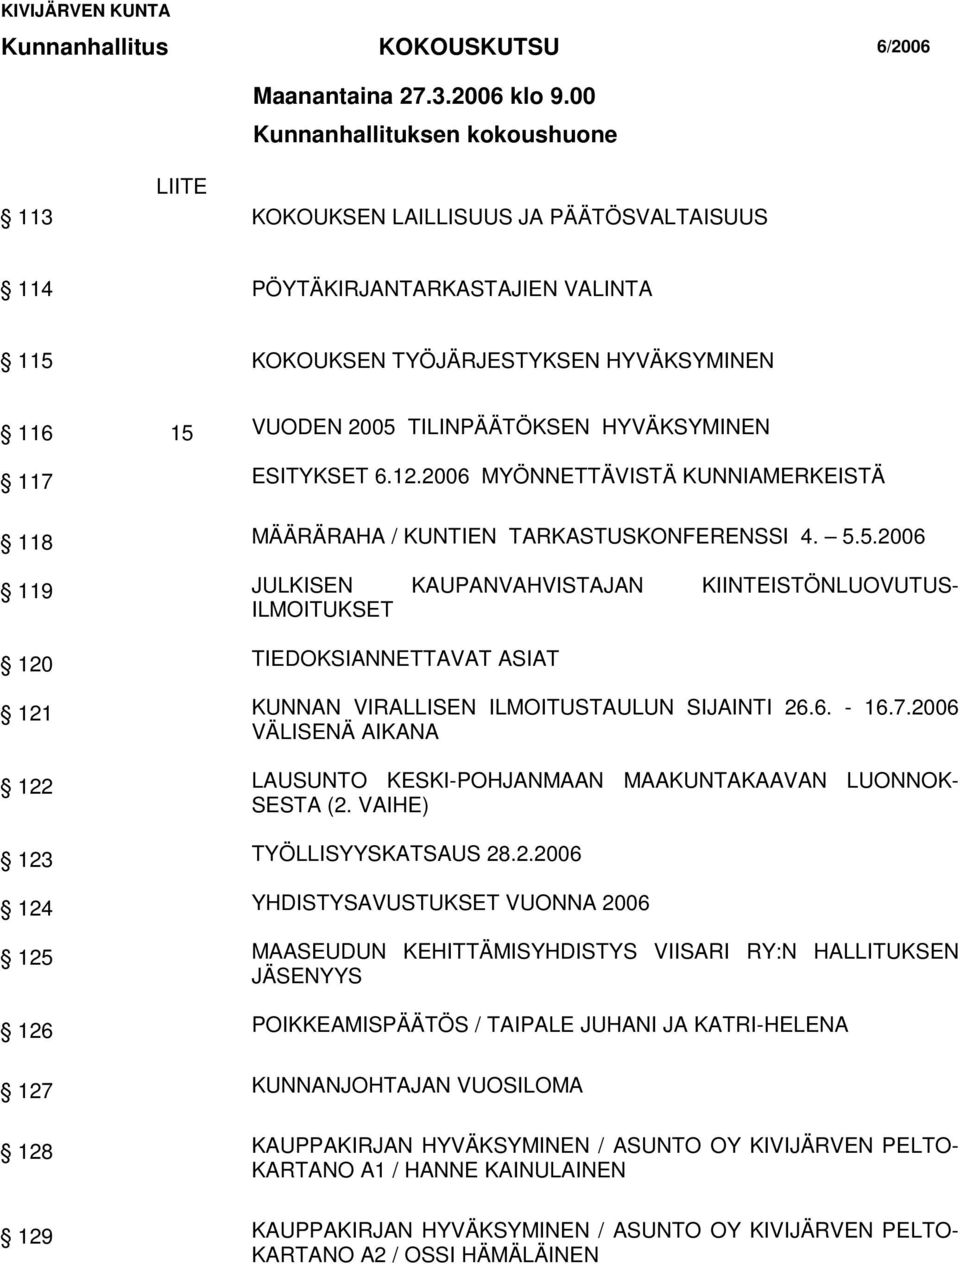 HYVÄKSYMINEN 117 ESITYKSET 6.12.2006 MYÖNNETTÄVISTÄ KUNNIAMERKEISTÄ 118 MÄÄRÄRAHA / KUNTIEN TARKASTUSKONFERENSSI 4. 5.